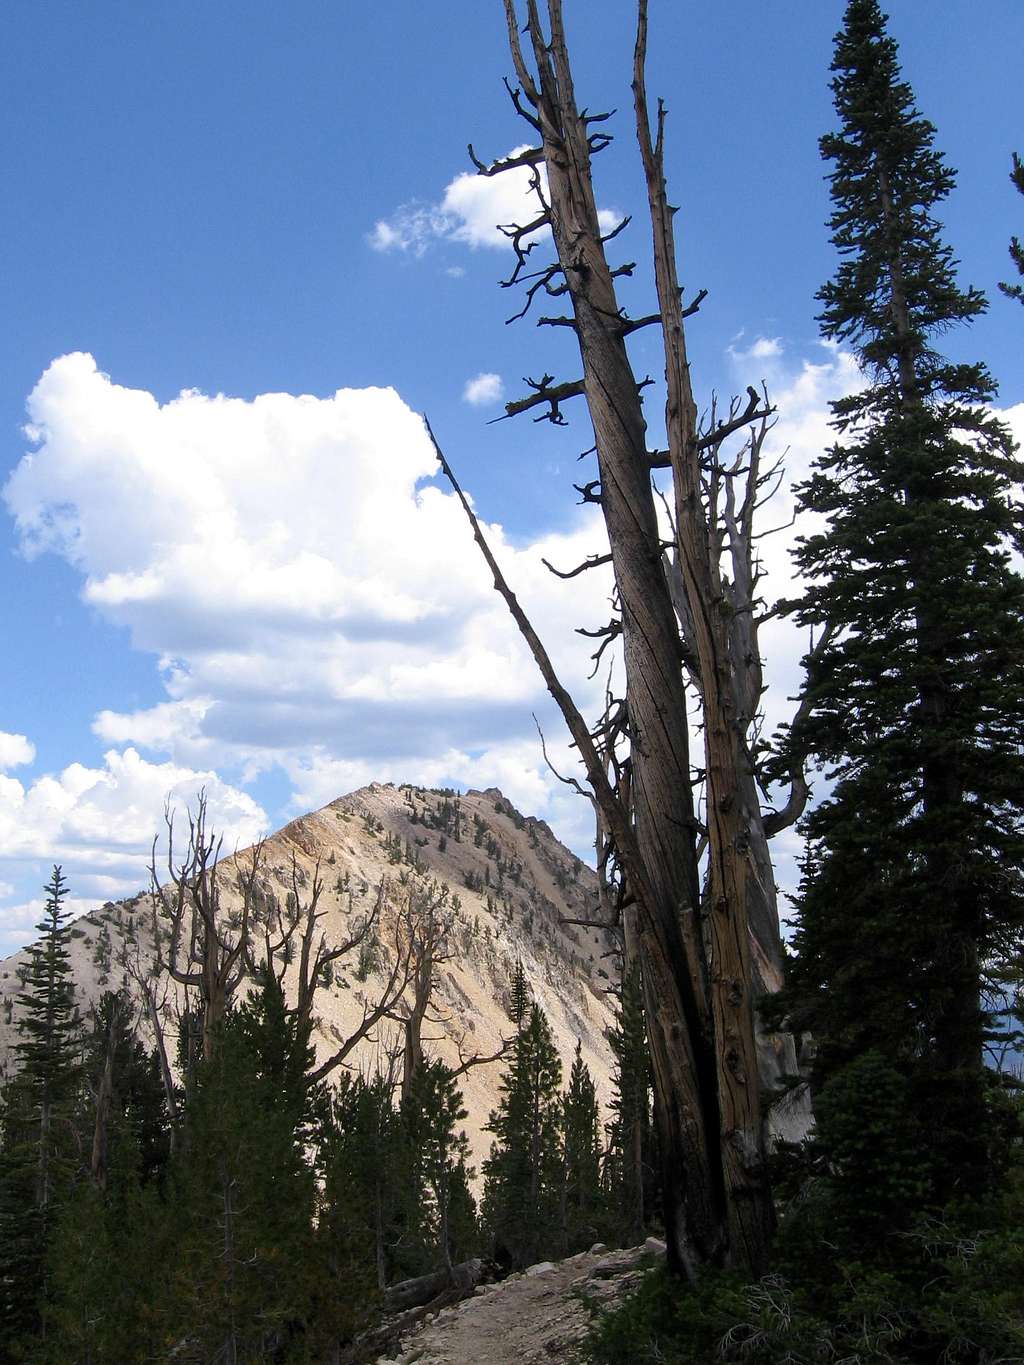 Imogene Peak and dead tree